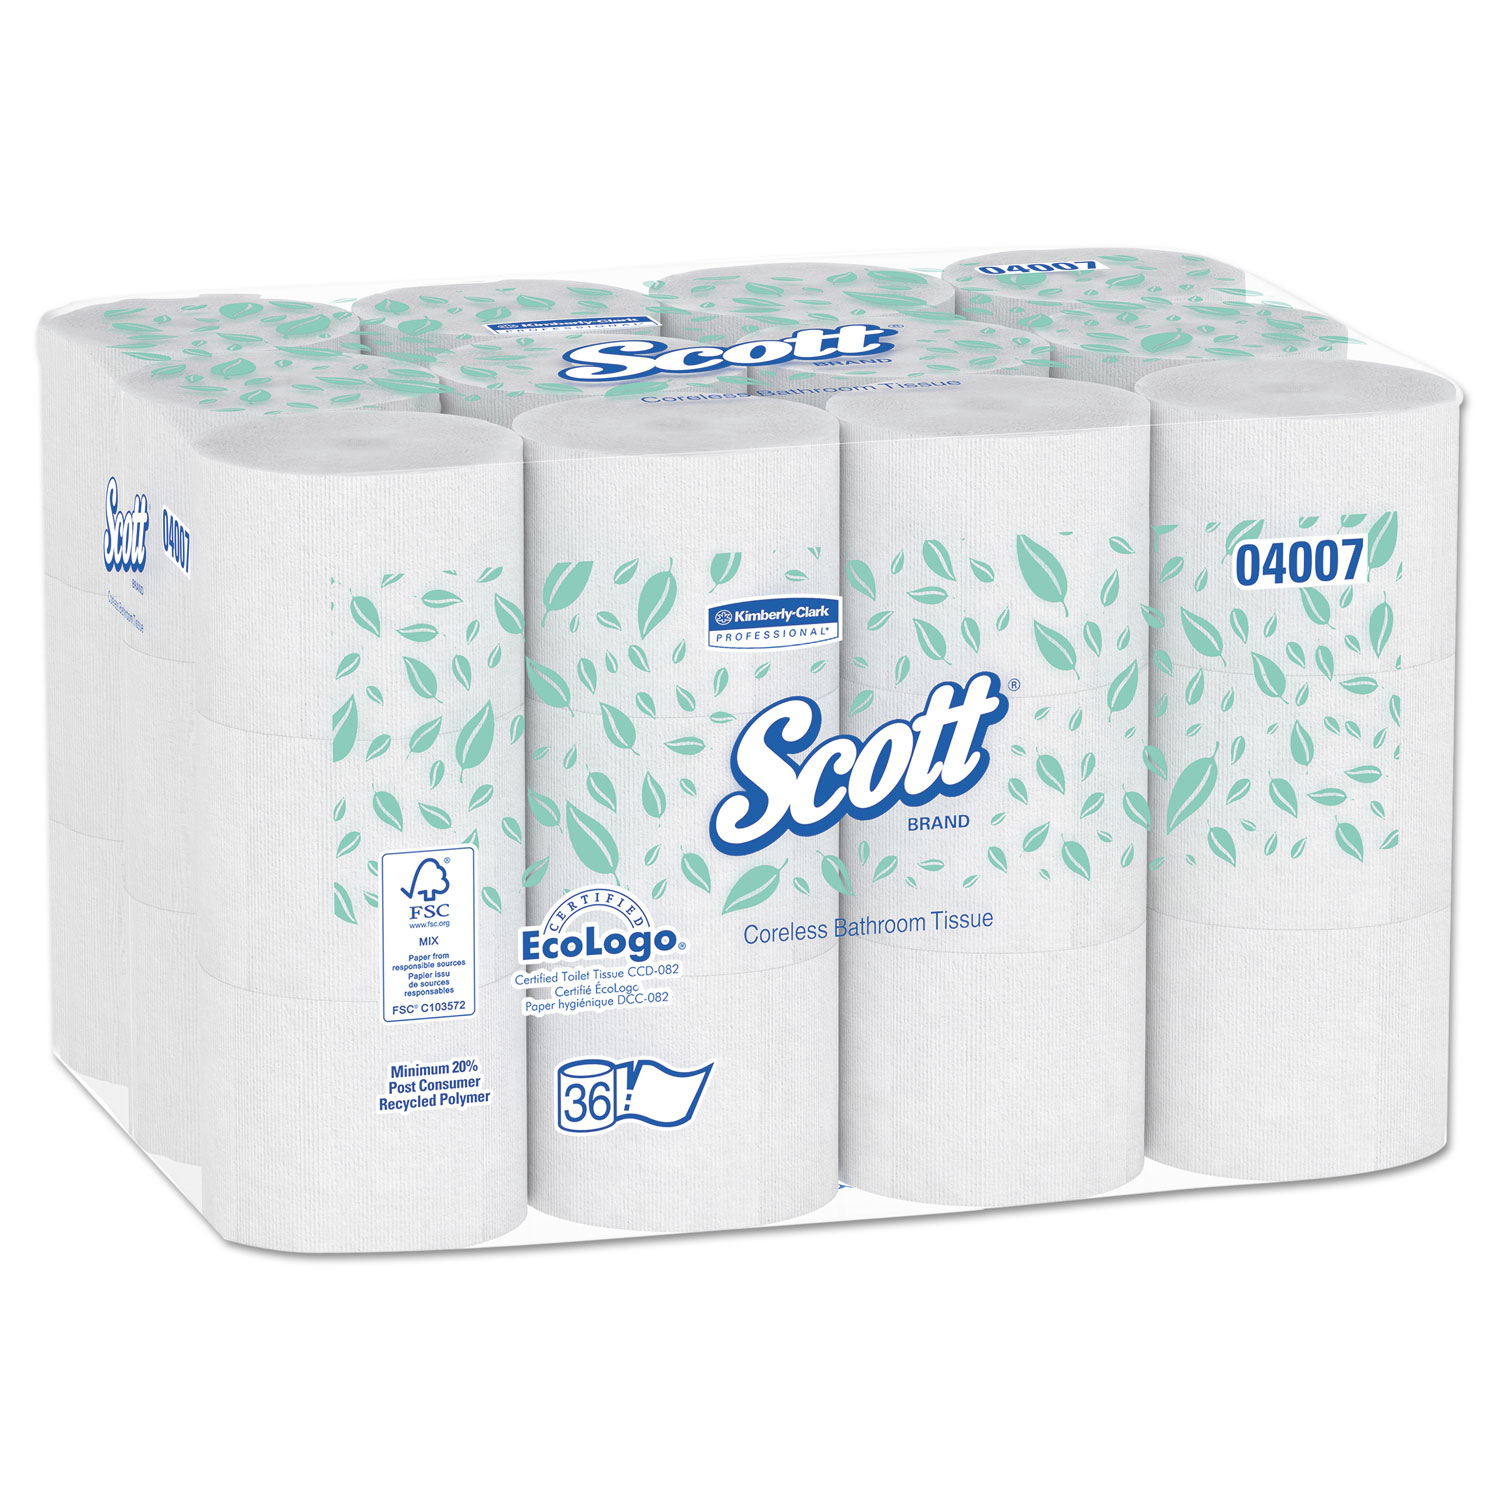 Designer toilet paper: $777